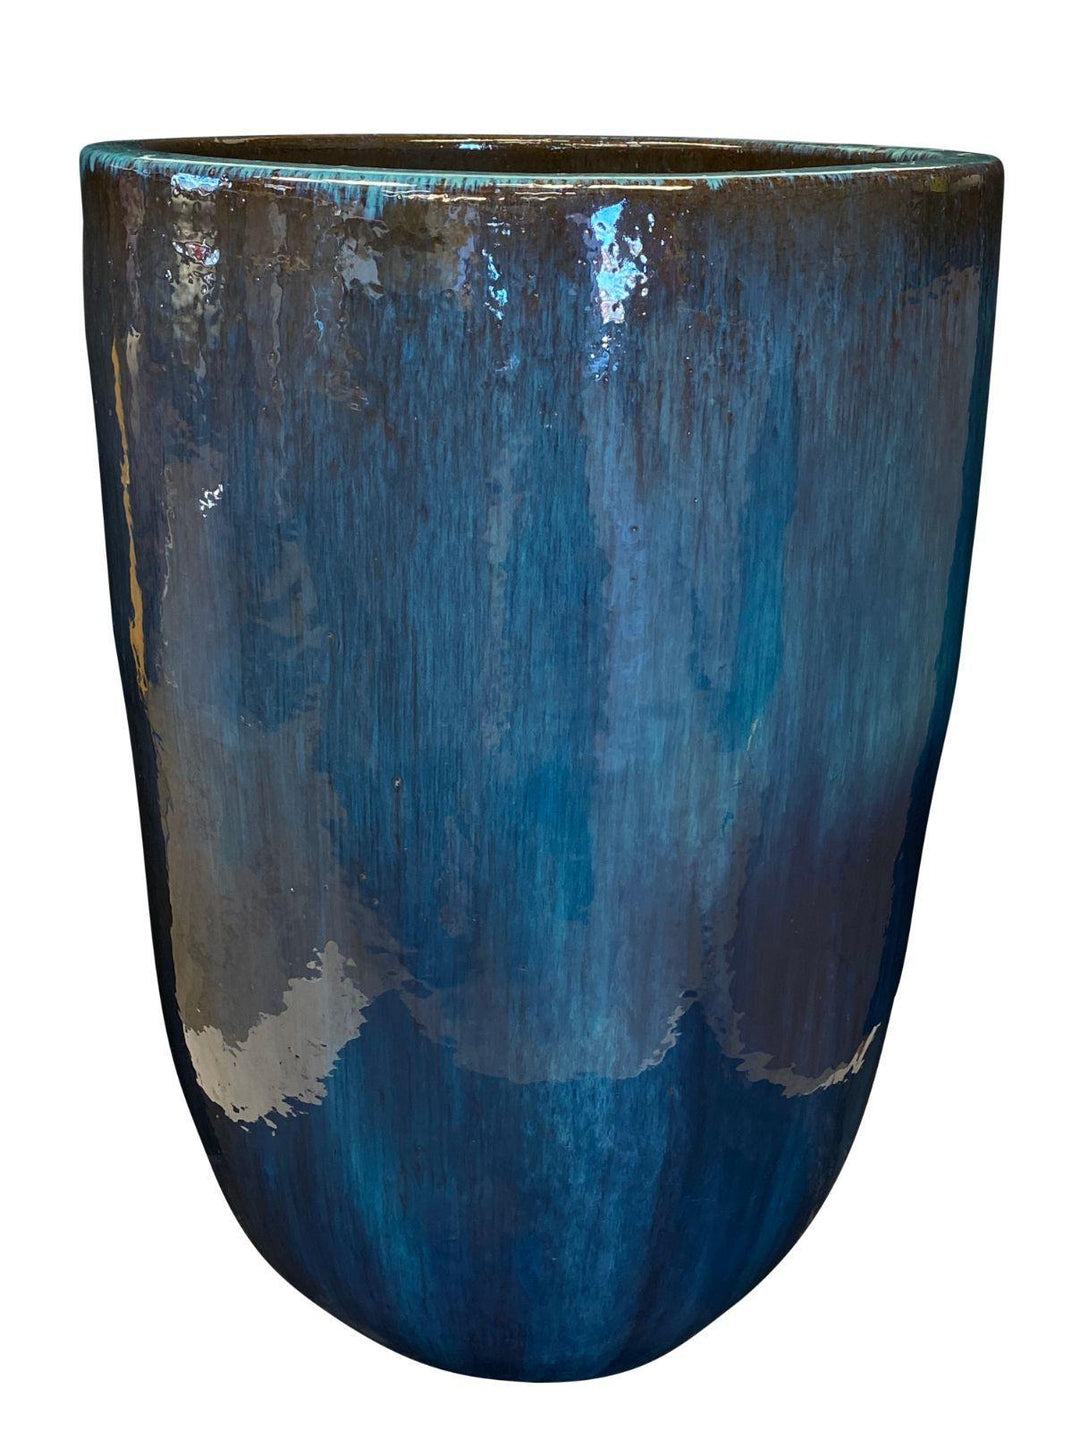 Image of a blue modern cylinder planter.